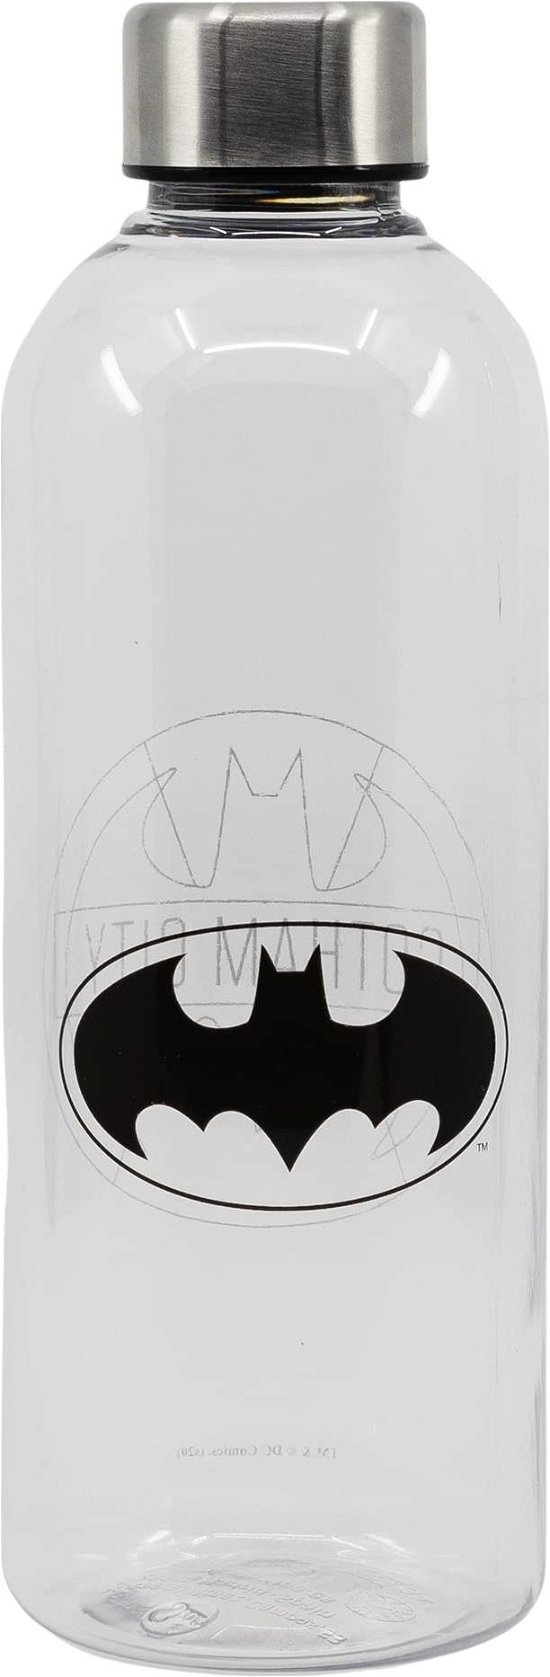 Plastic Bottle - Size 850ml - Batman - Marchandise -  - 8412497855650 - 